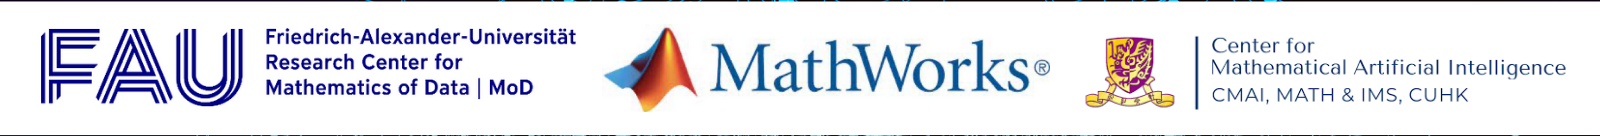 FAU MoD | MathWorks | CMAI